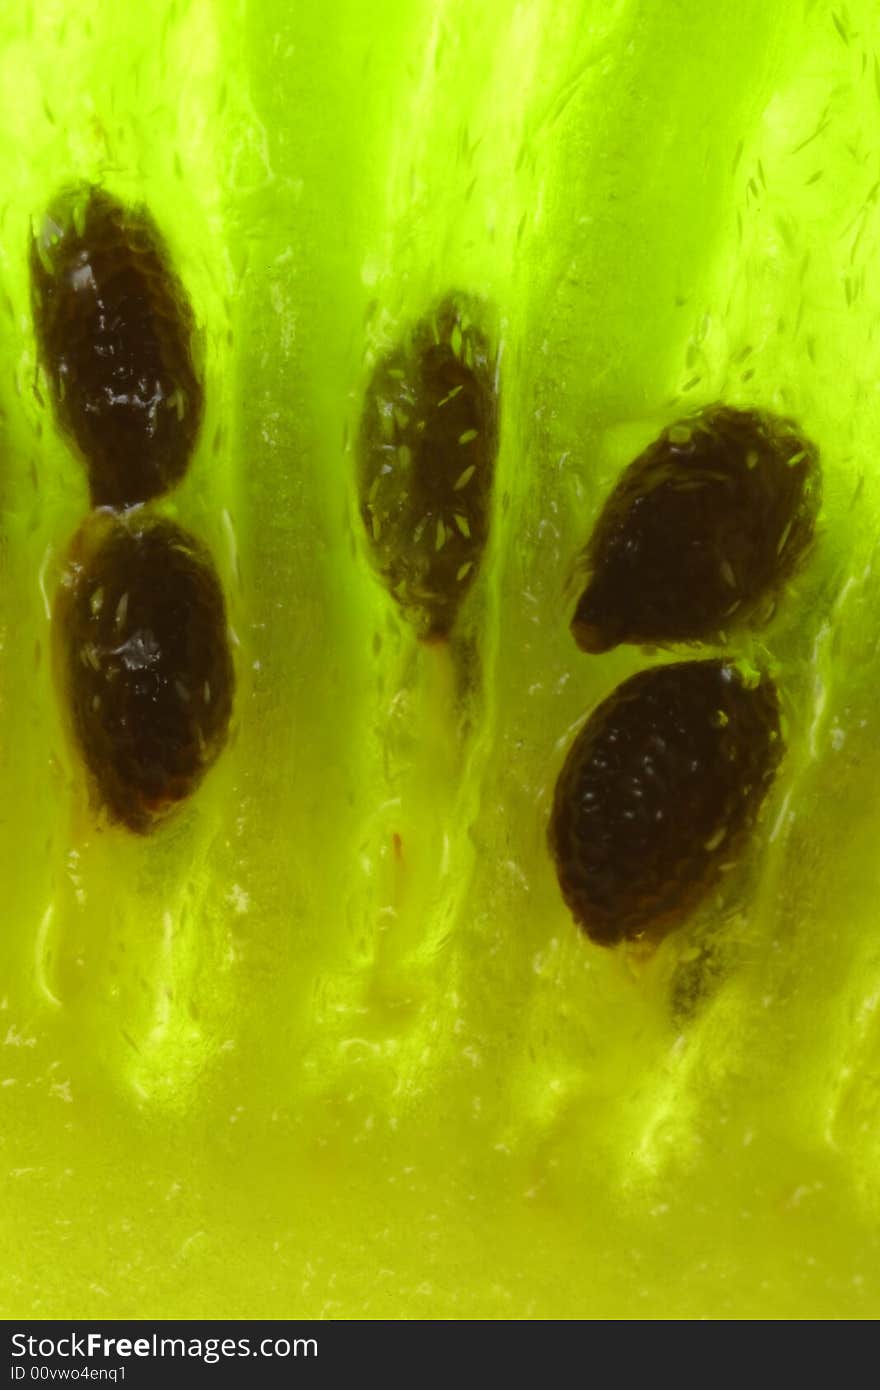 Amazing close-up of kiwi slice (5x)